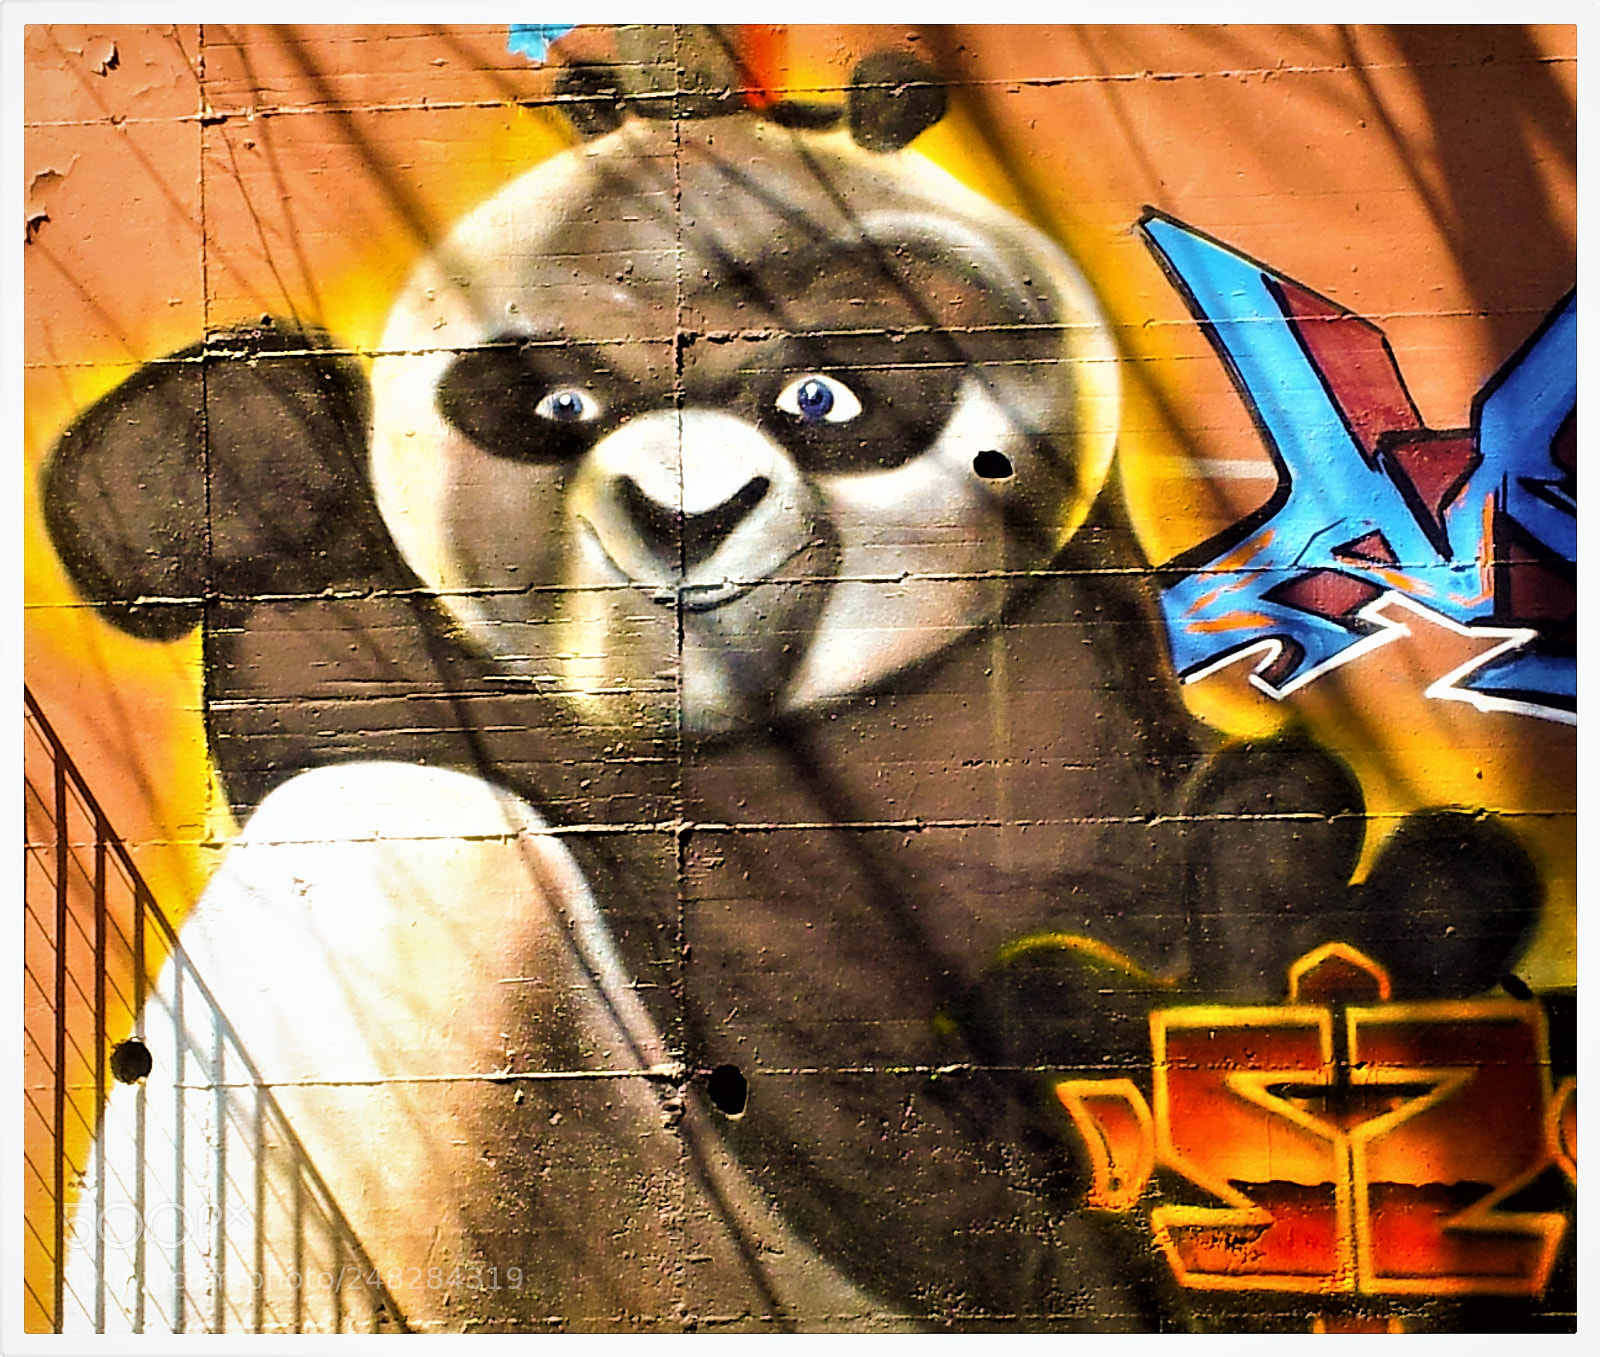 Samsung Galaxy S2 sample photo. Kung fu panda murales photography